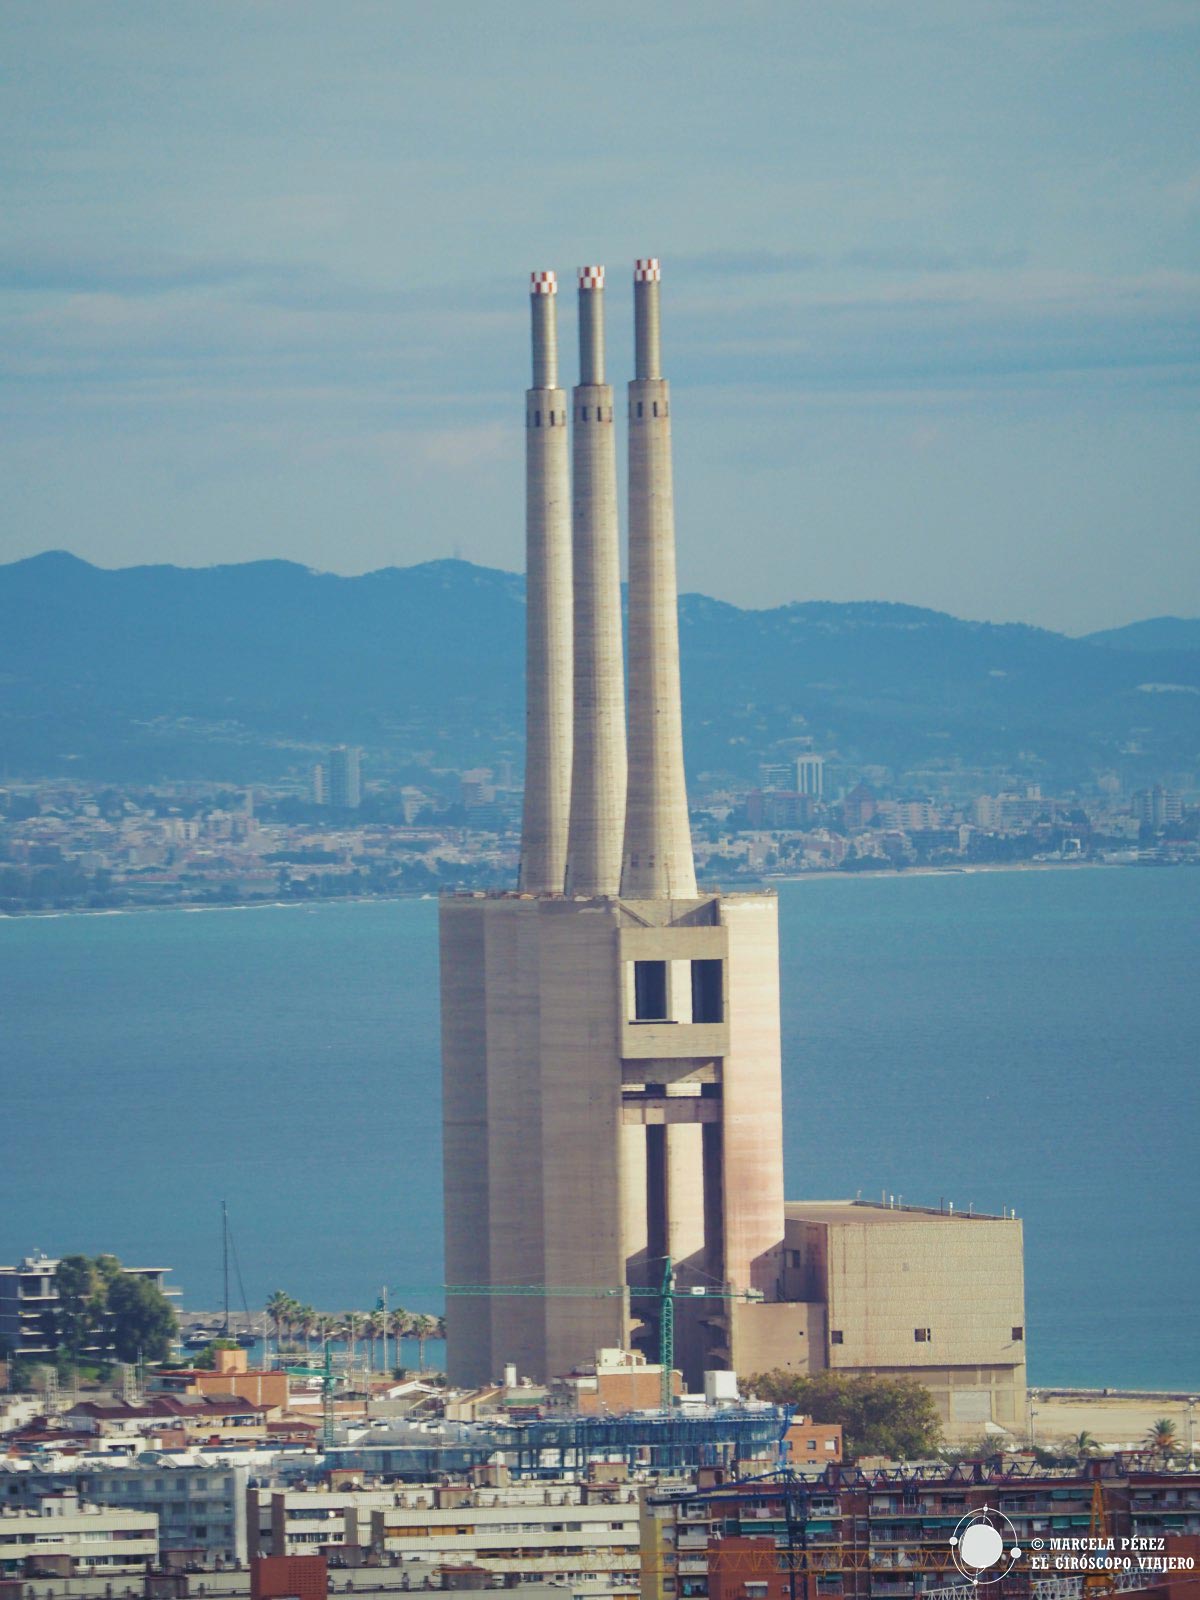 Las tres chimeneas símbolo representativo de Barcelona